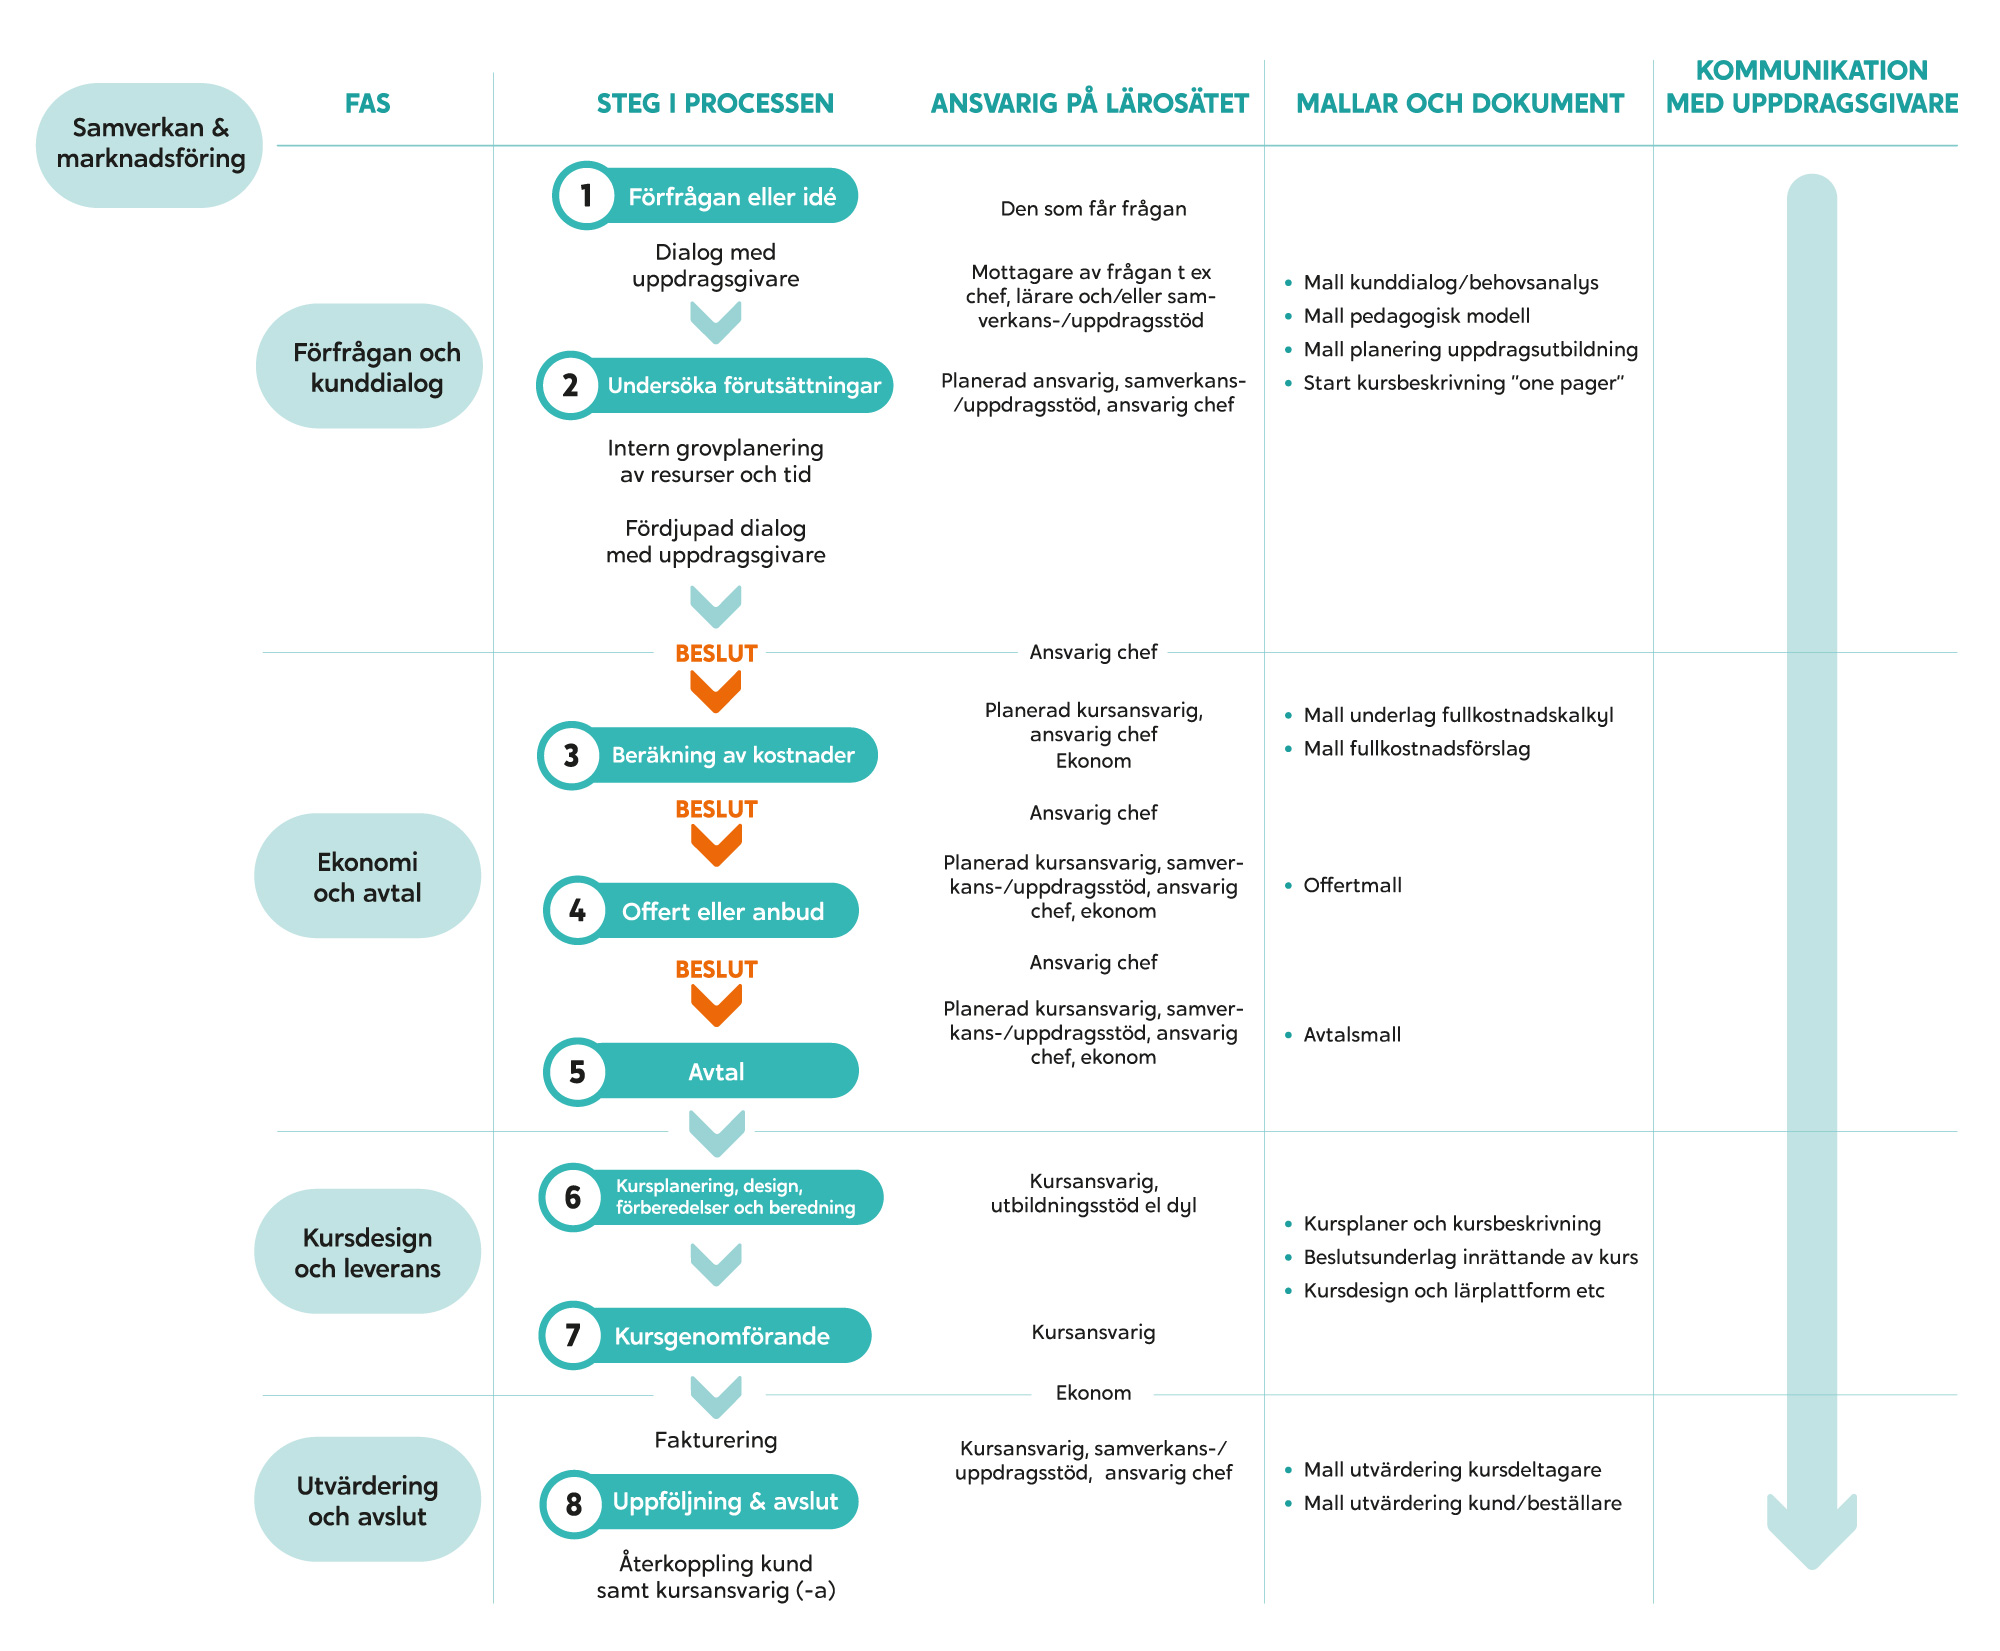 Bild på Översikt uppdragsutbildningsprocessen områden med faser, funktioner, roller och mallar/dokument.